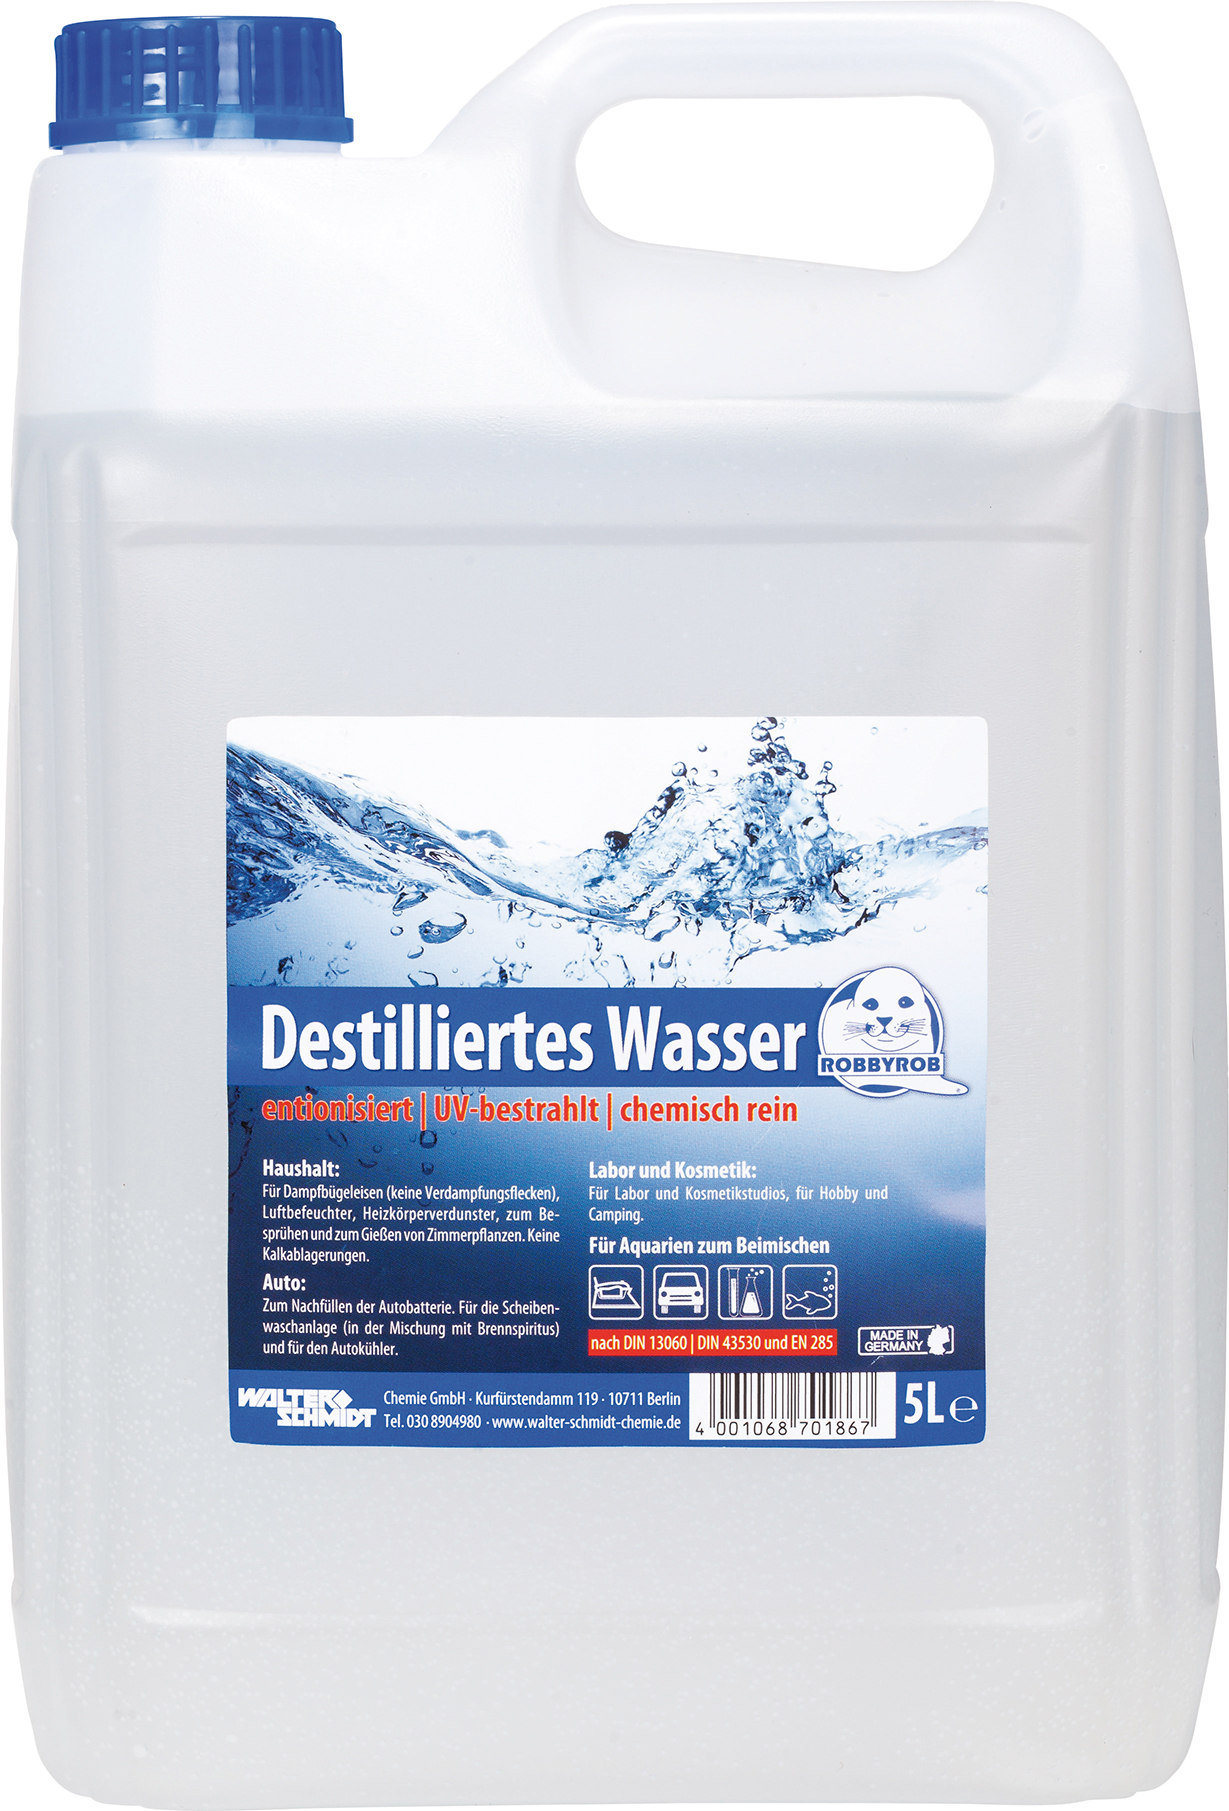 Picture of Destilliertes Wasser 20L Kanister ROBBYROBStreckenartikel